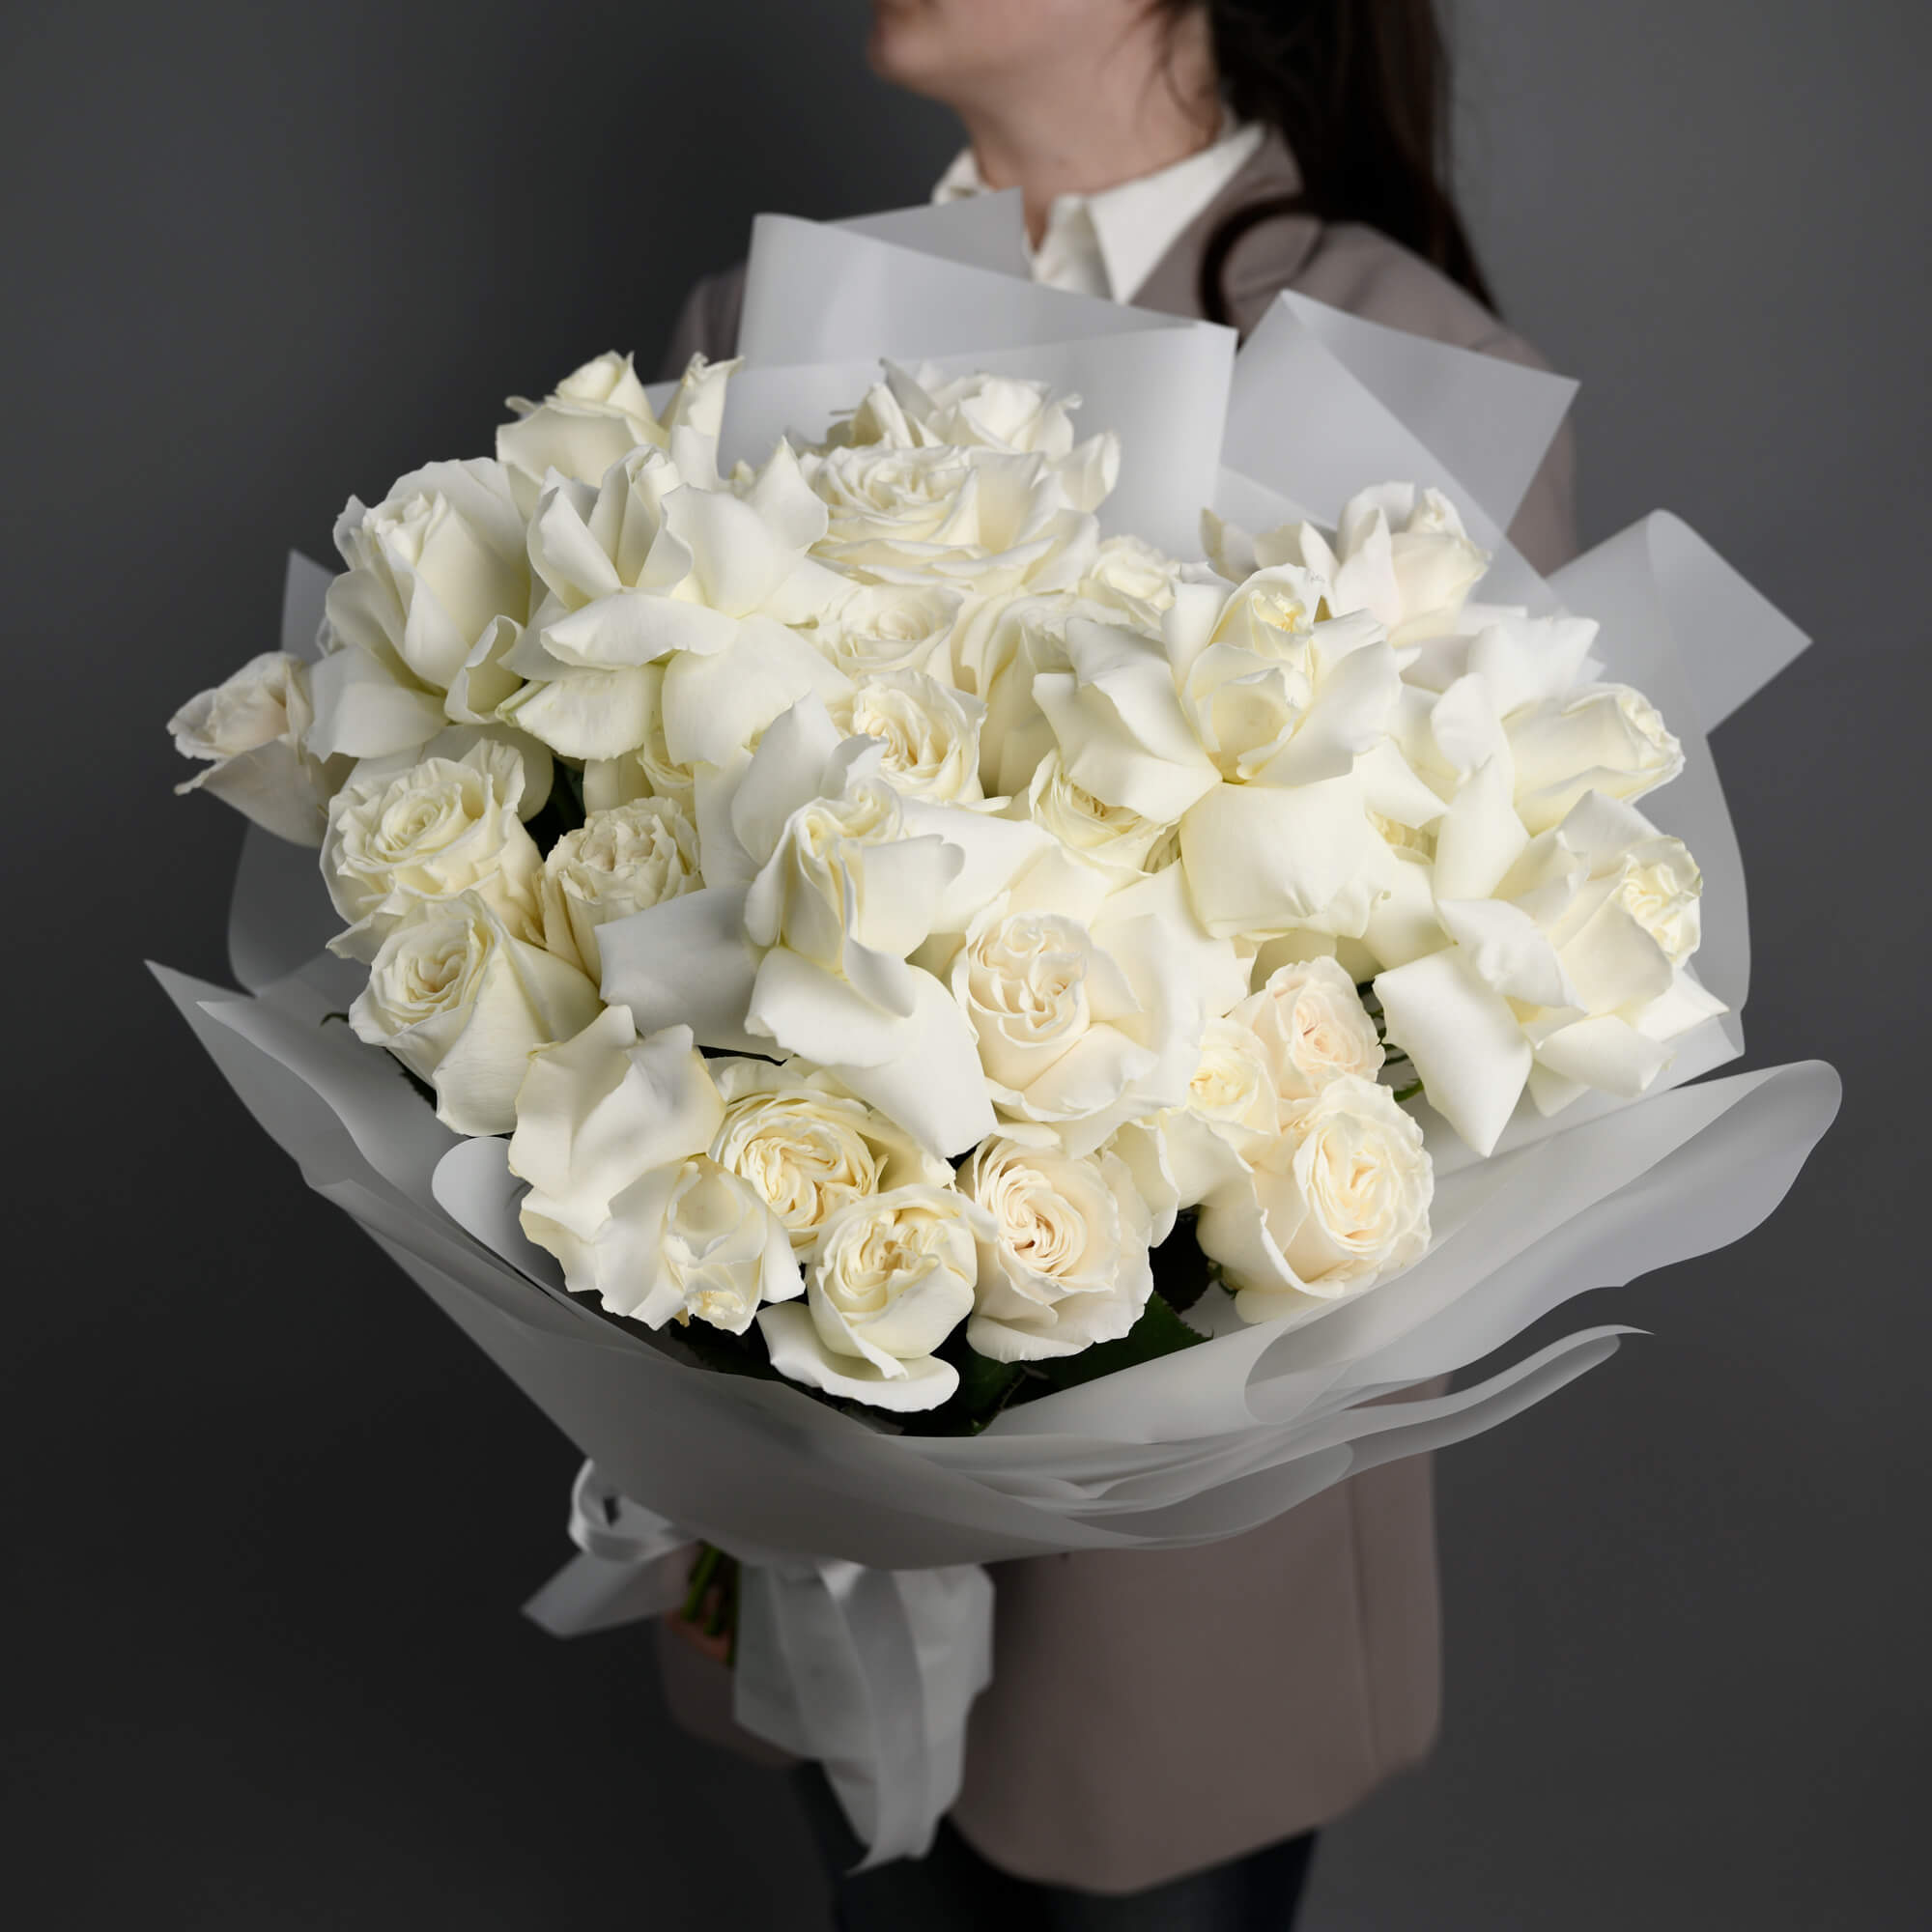 Buchet mixt cu 31 trandafiri albi, 3